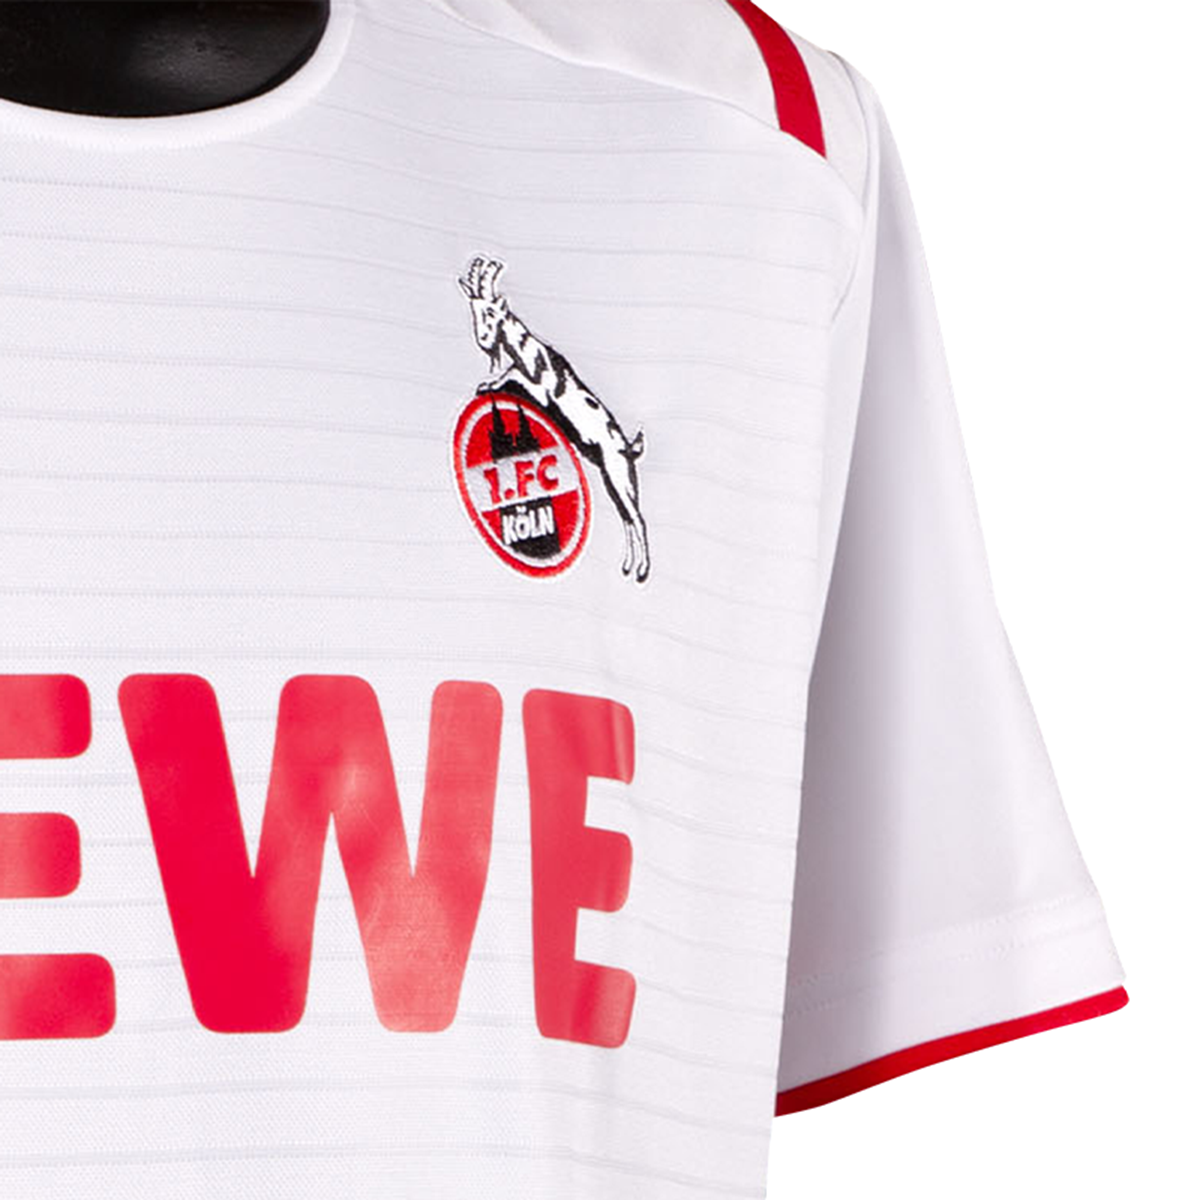 Uhlsport 1.FC Köln Heimtrikot Trikot Shirt 2019/2020 Kinder weiss